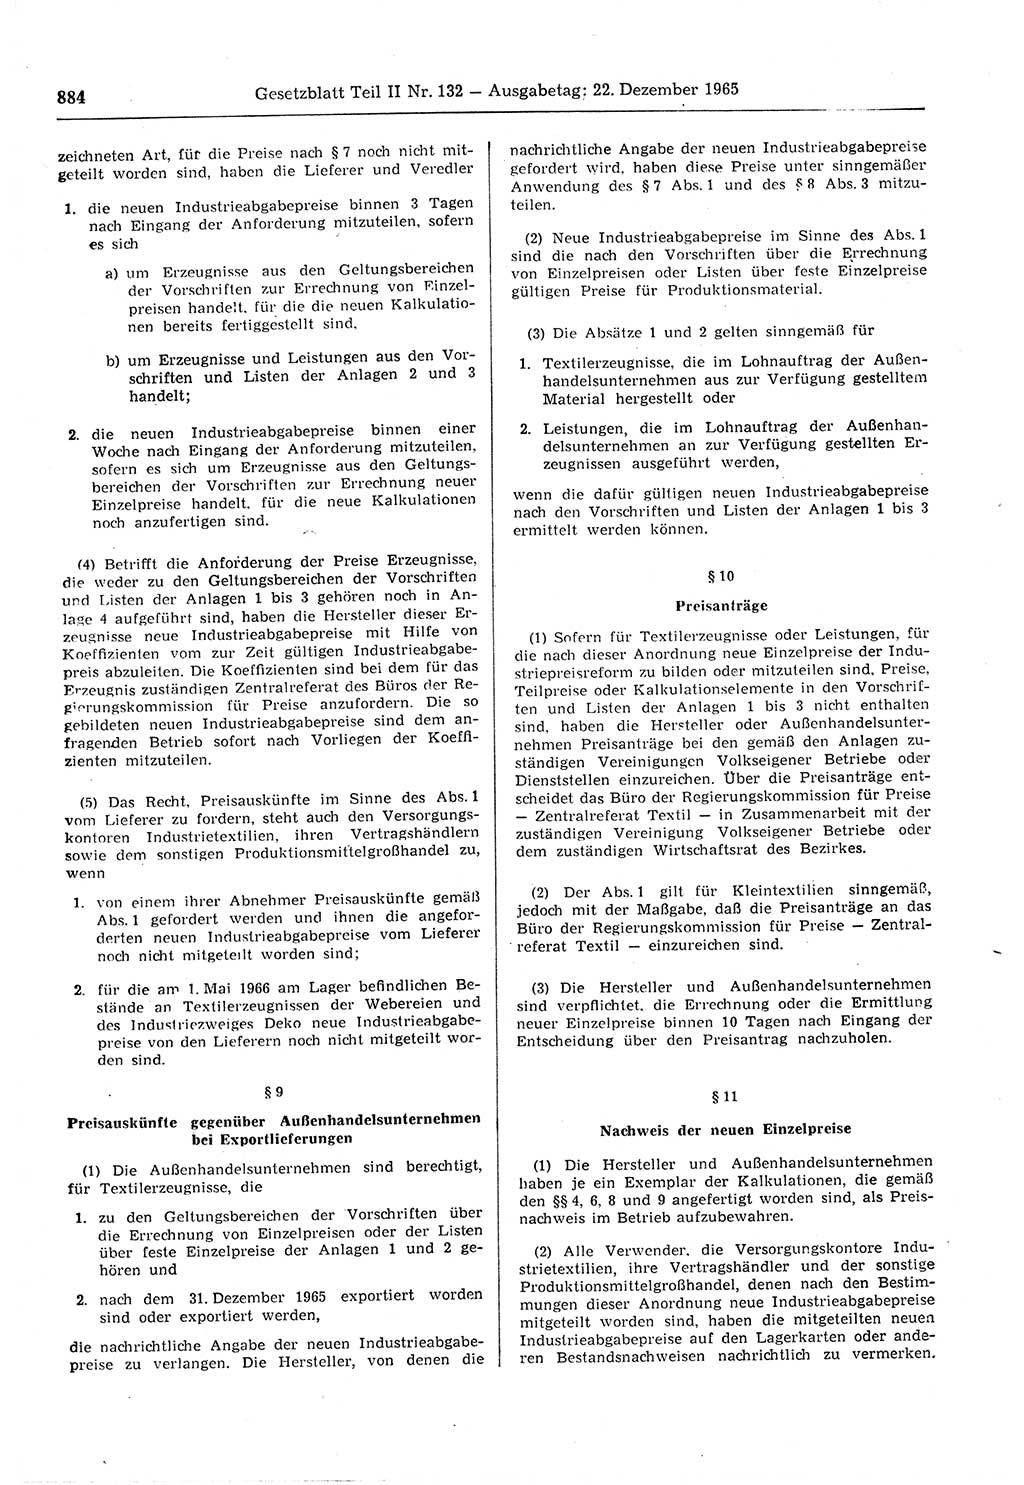 Gesetzblatt (GBl.) der Deutschen Demokratischen Republik (DDR) Teil ⅠⅠ 1965, Seite 884 (GBl. DDR ⅠⅠ 1965, S. 884)